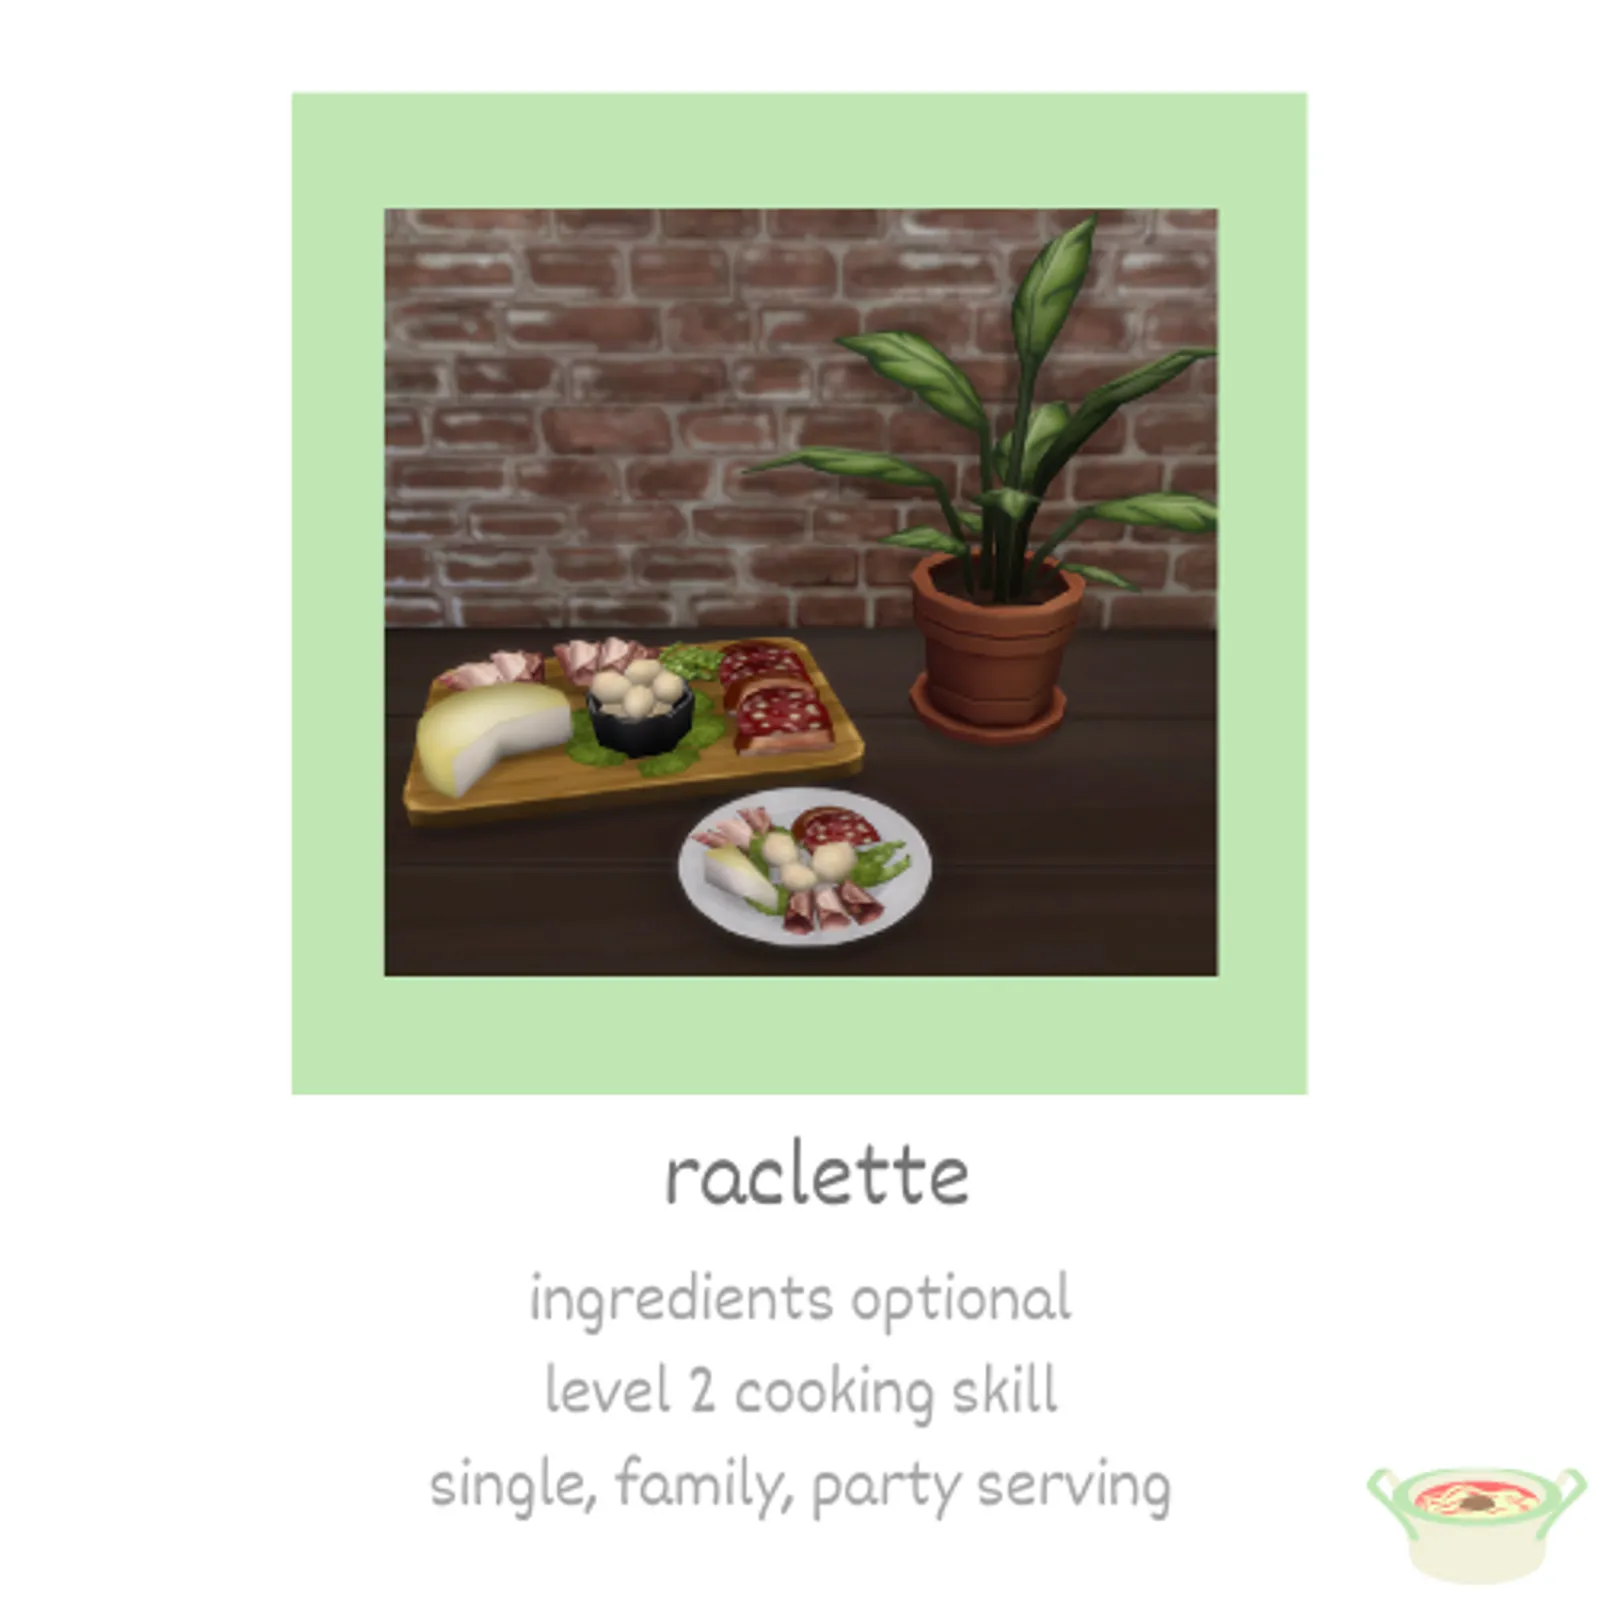 raclette meat tasting platter